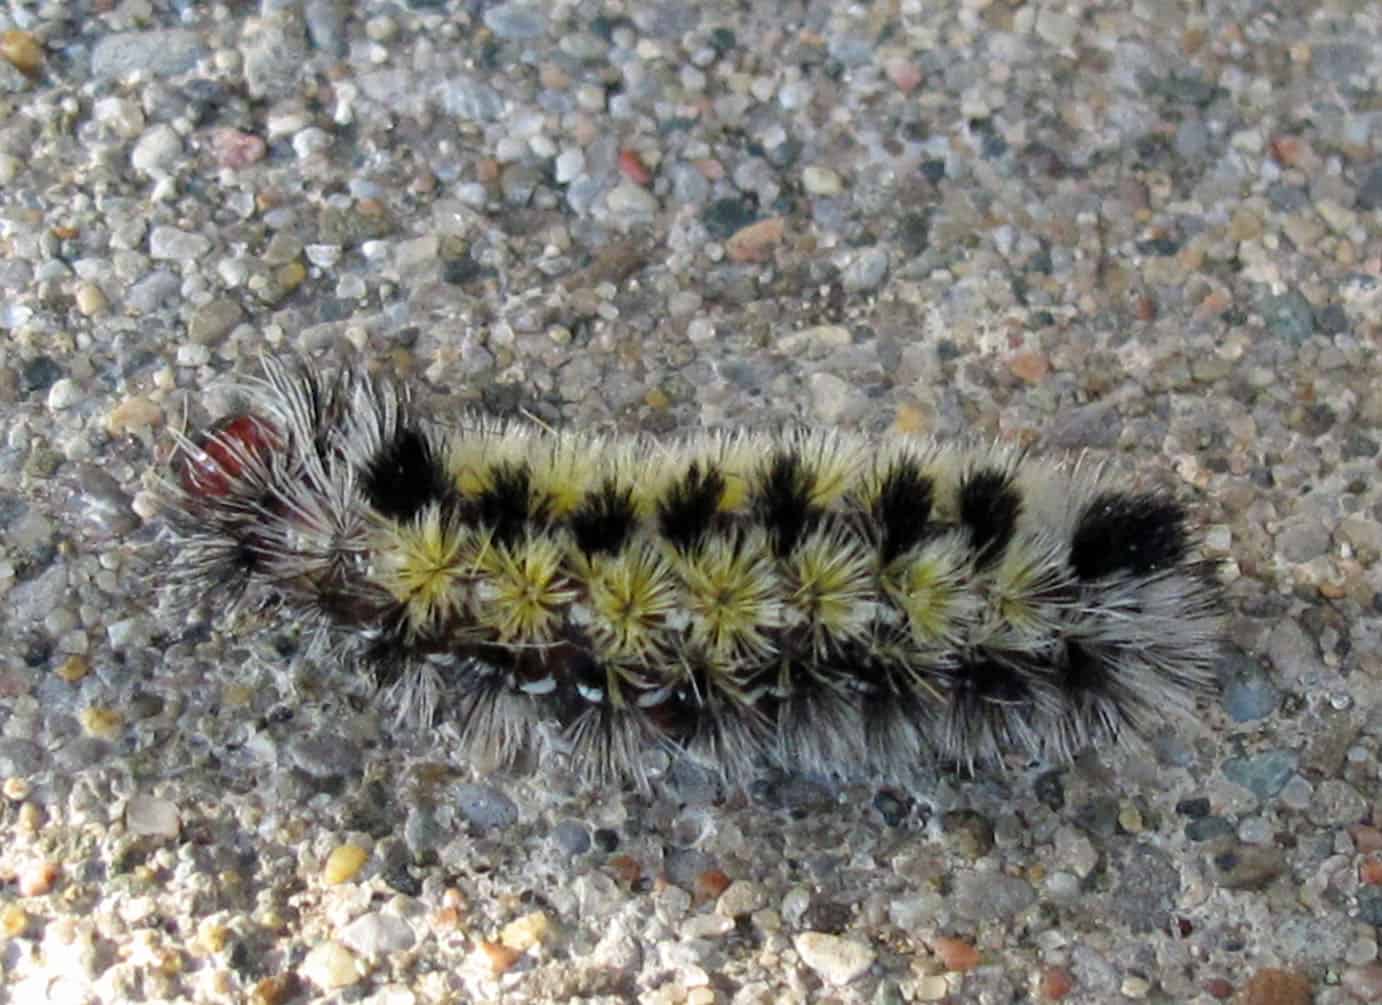 Ctenucha virginica caterpillar